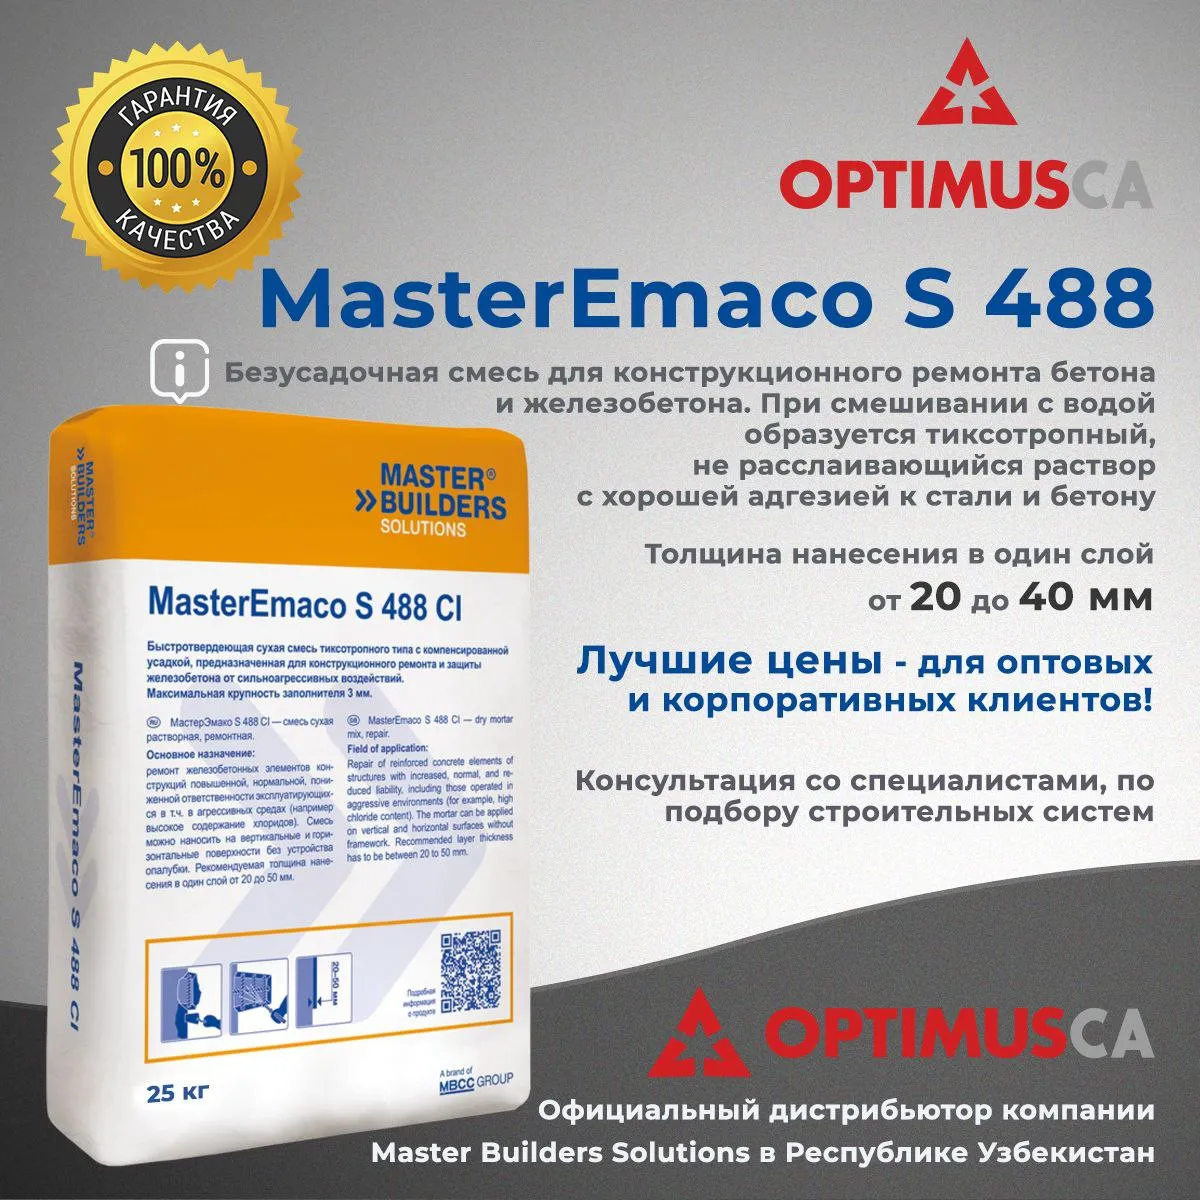 MasterEmaco S 488 - Безусадочная быстротвердеющая сухая смесь#2